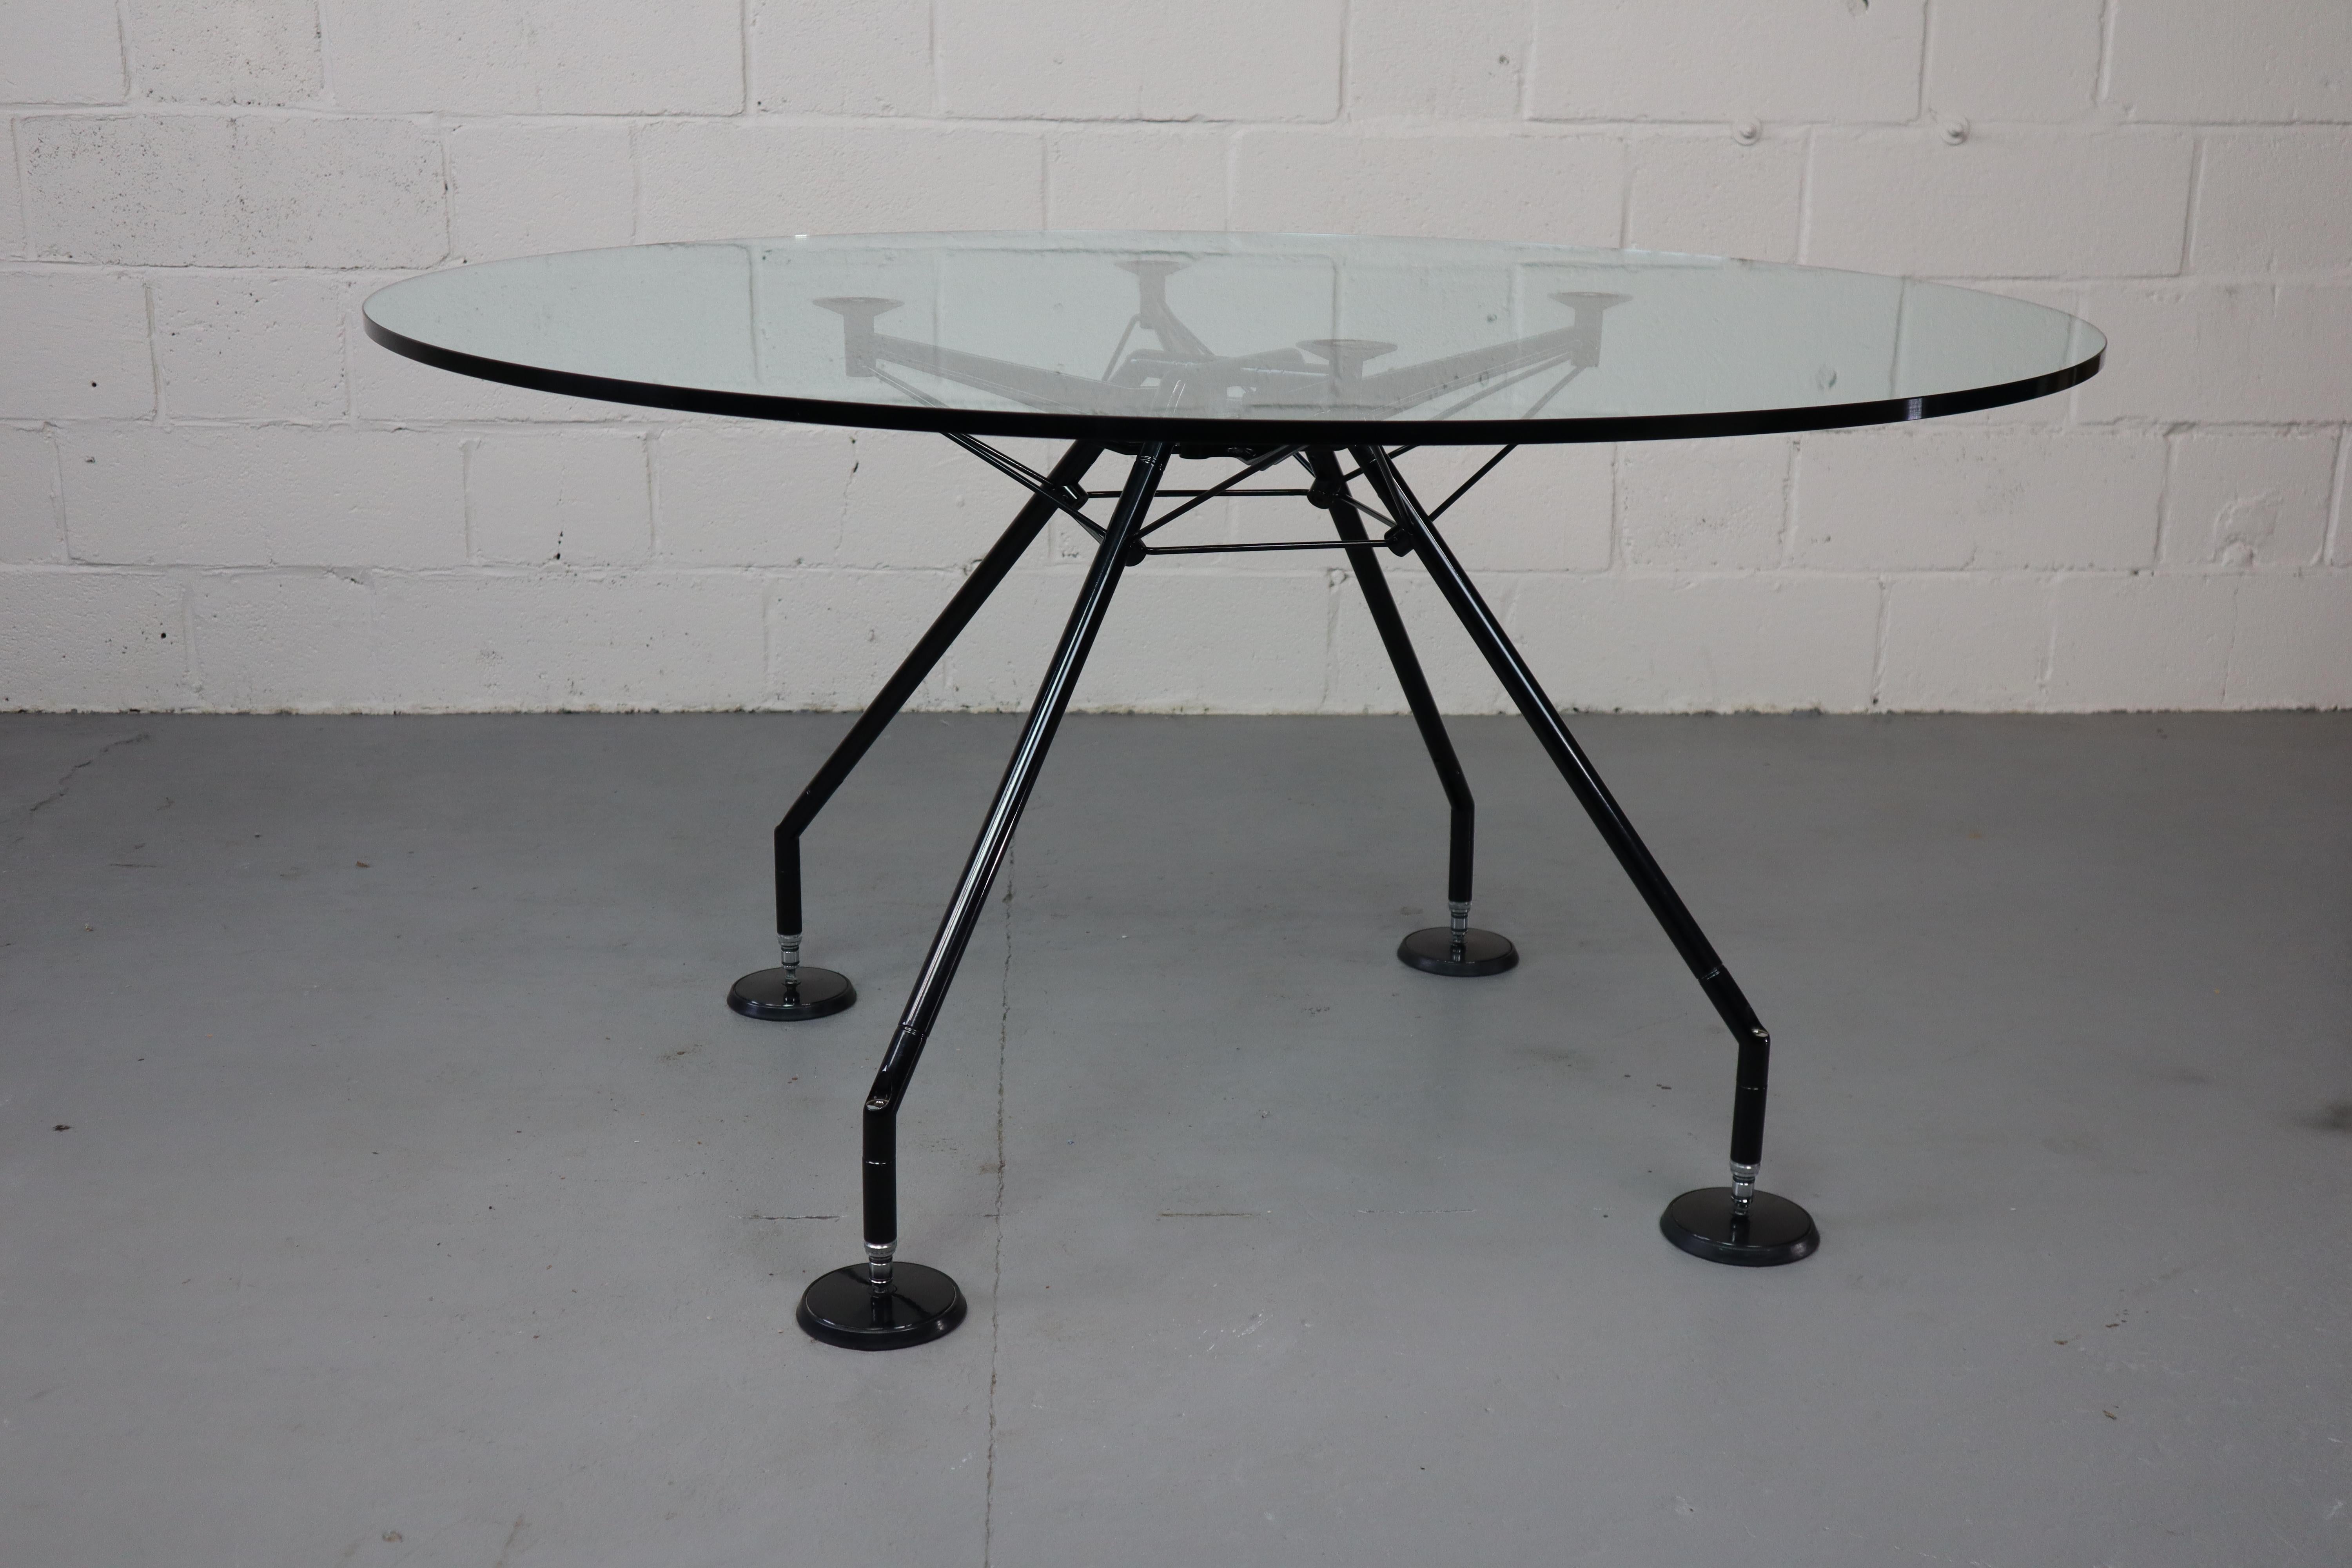 Nomos-Tisch von Norman Foster für Tecno, 1987.
Der Tisch hat eine transparente Glasplatte (Sicherheitsglas) und ein schwarz lackiertes Metallgestell. Höhenverstellbar.
Ausgezeichnet mit dem renommierten Compasso d'Oro im Jahr 1987.
Dieser Tisch ist